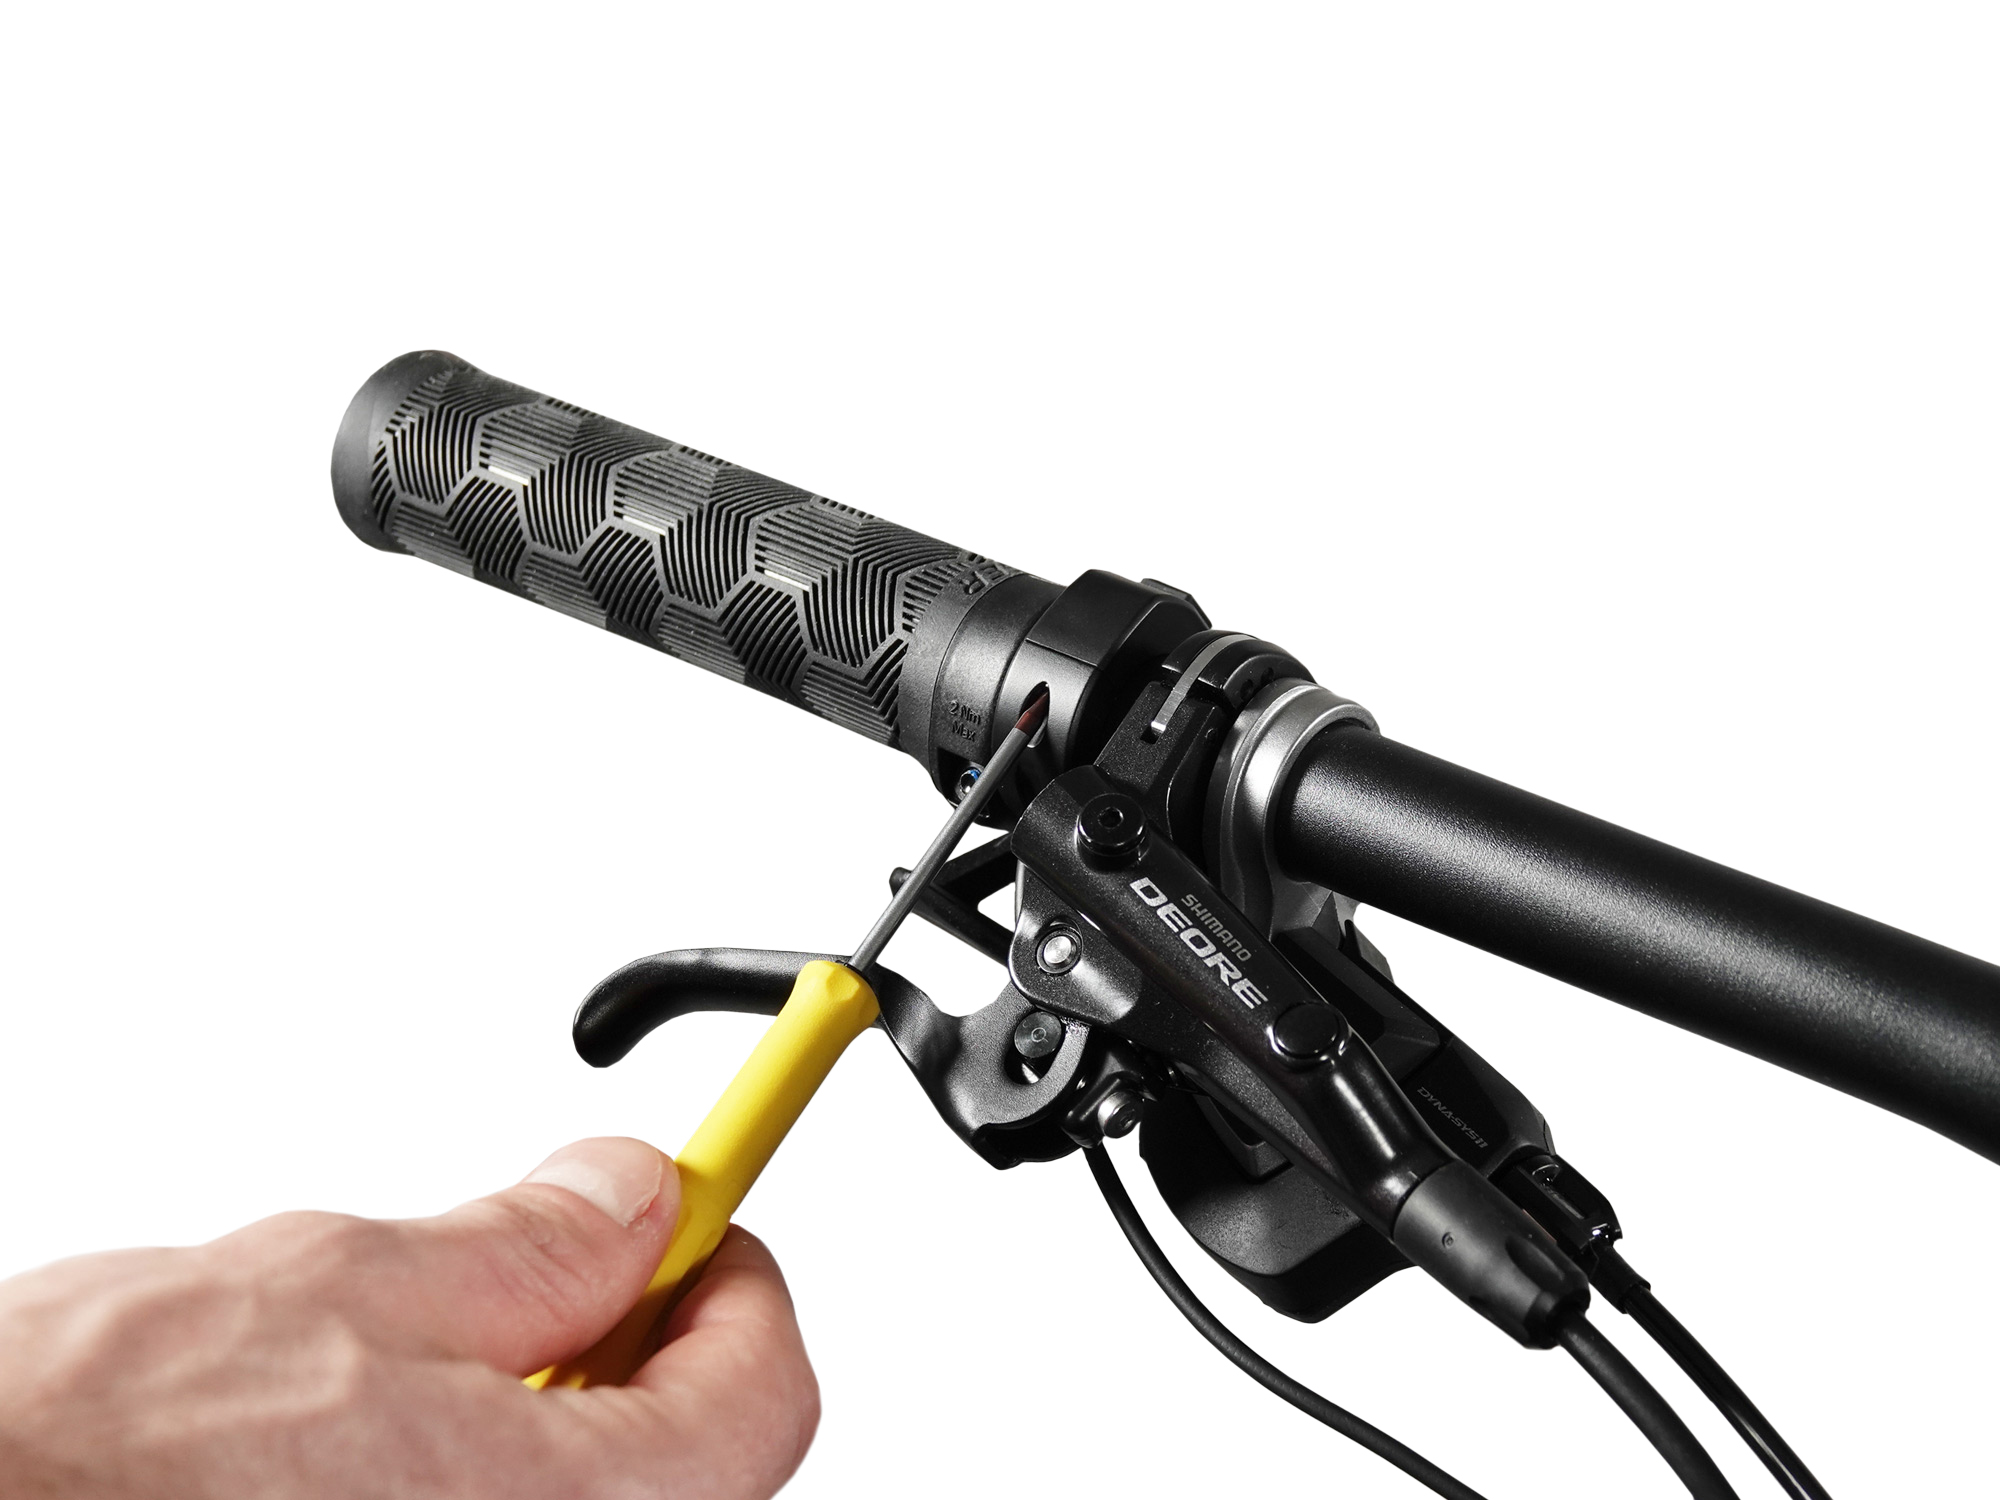 Screw for E-Bike cable remote